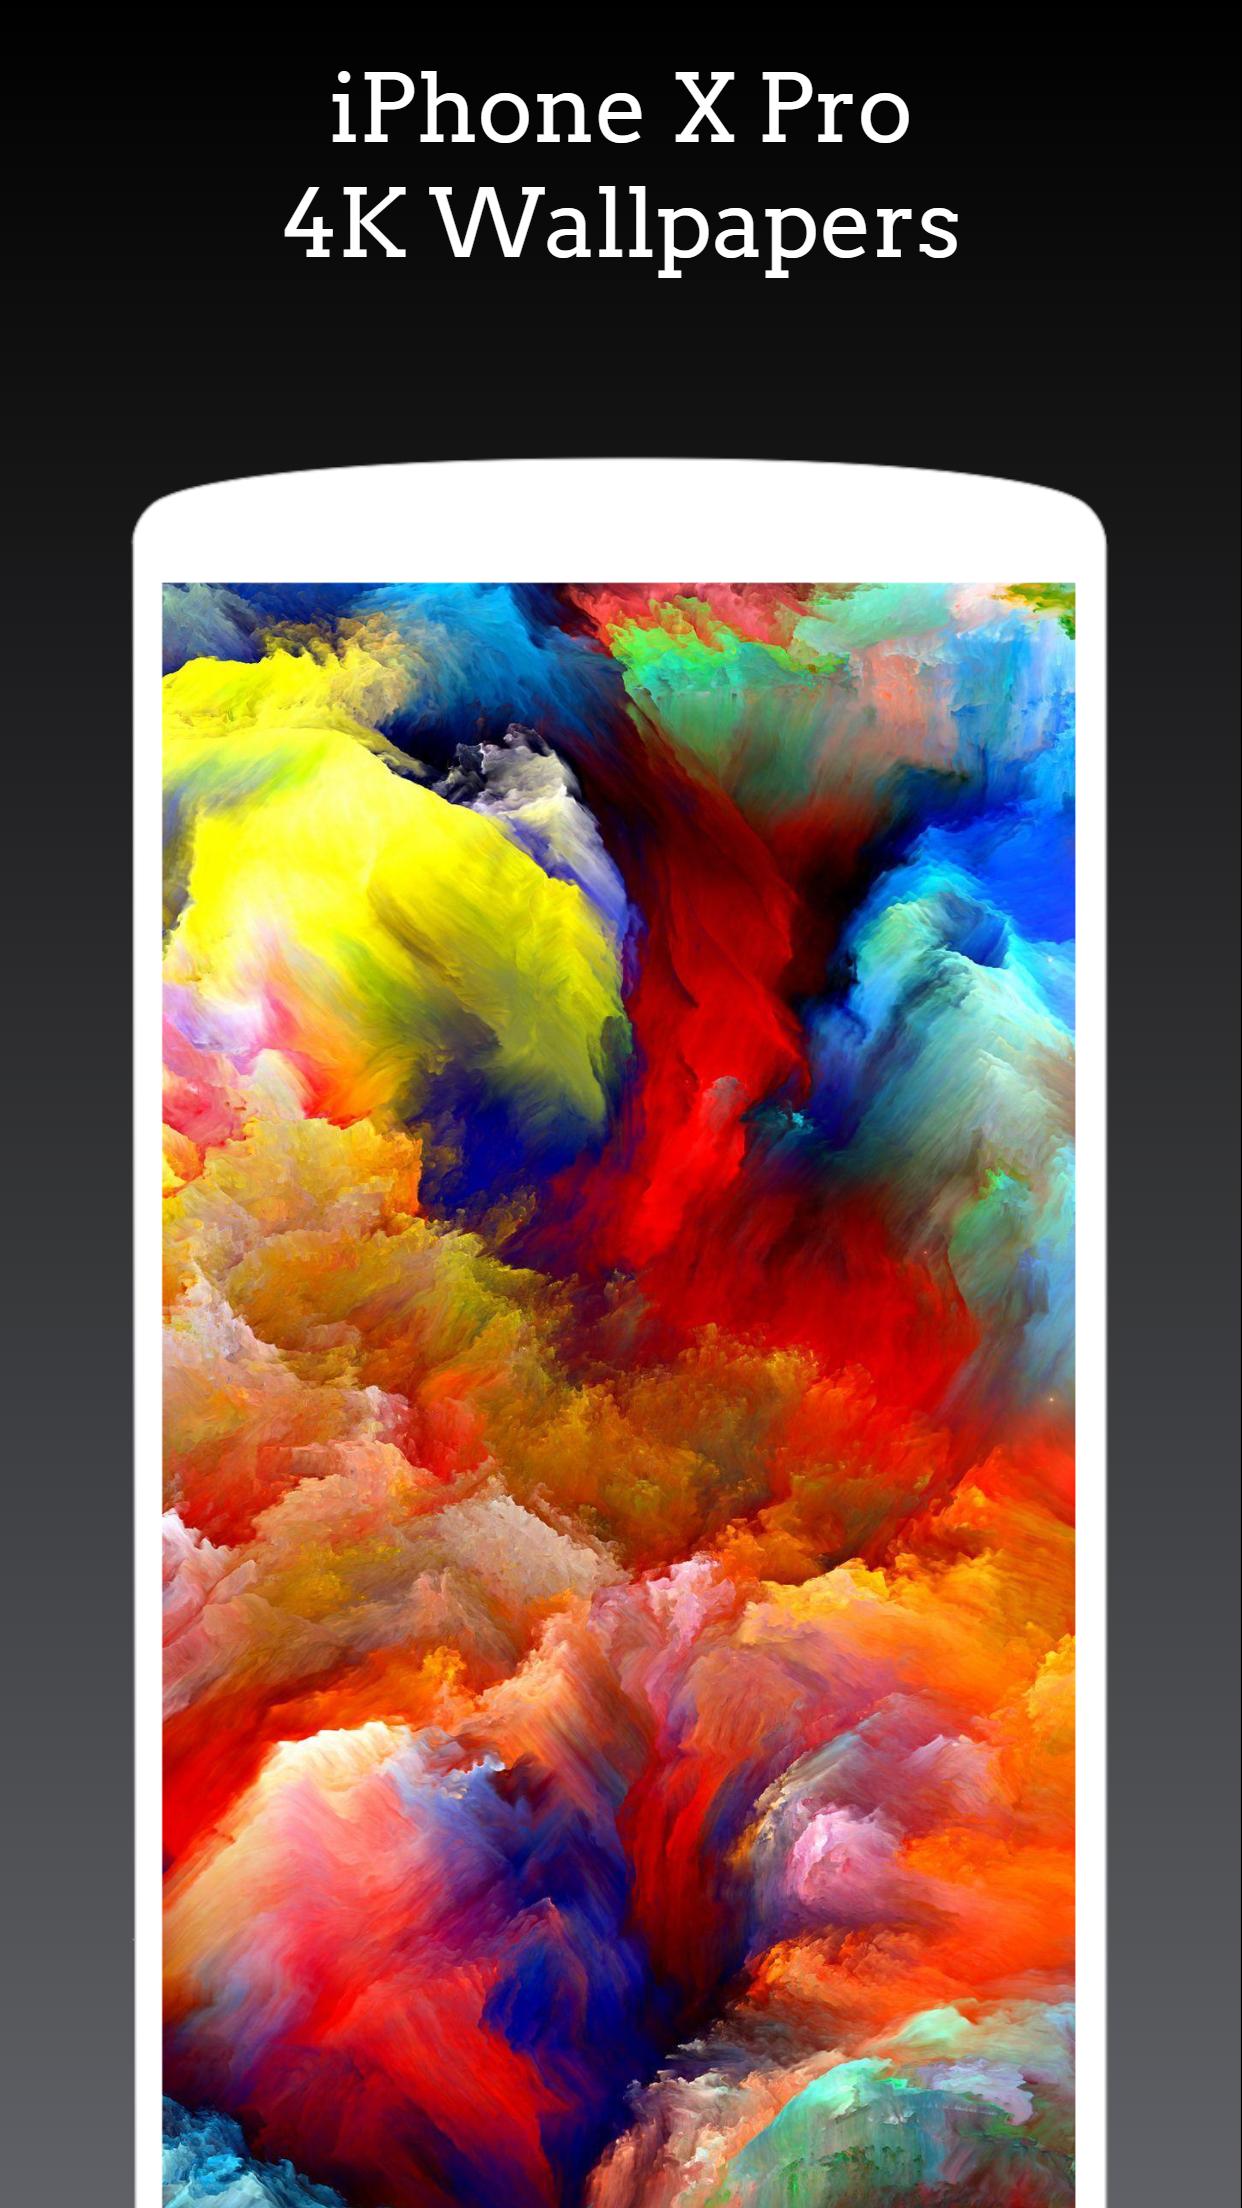 Wallpaper iOS 15 cho Android: Với giao diện mới mẻ và tính năng độc đáo, iOS 15 đã trở thành trào lưu được nhiều người sử dụng Android săn lùng. Những hình nền iOS 15 cho Android sẽ giúp bạn trang trí cho màn hình điện thoại của mình thêm phần độc đáo và thú vị.